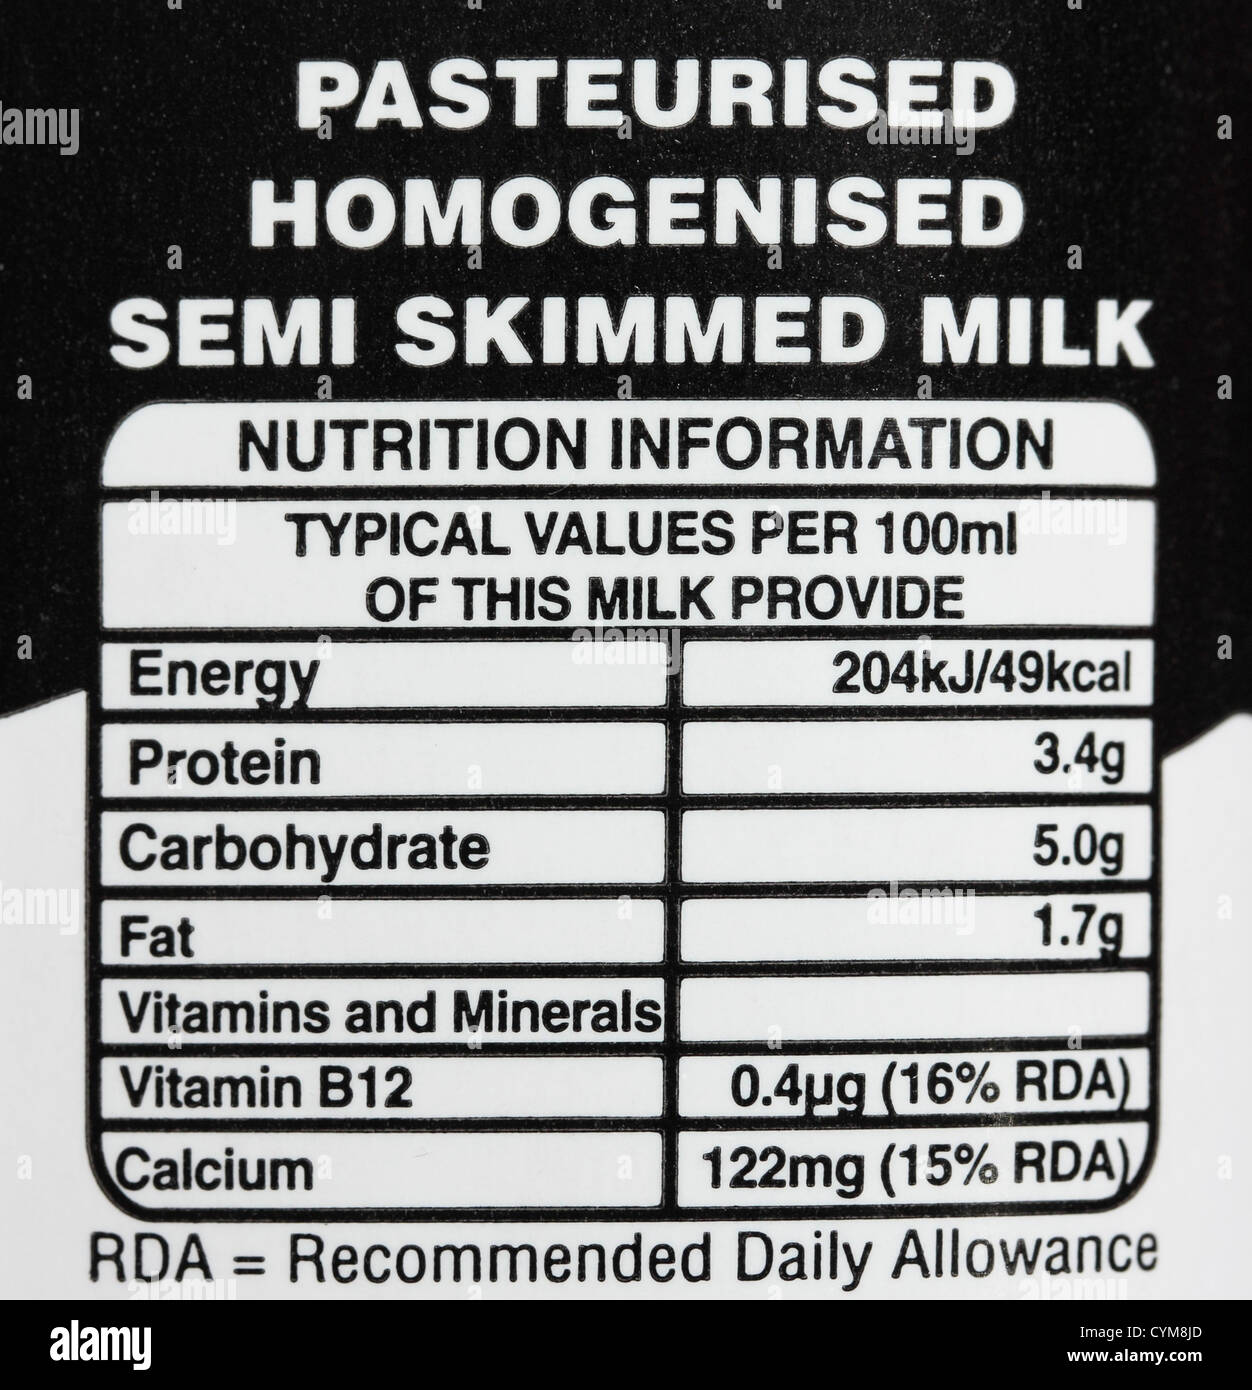 semi skimmed milk nutrition facts